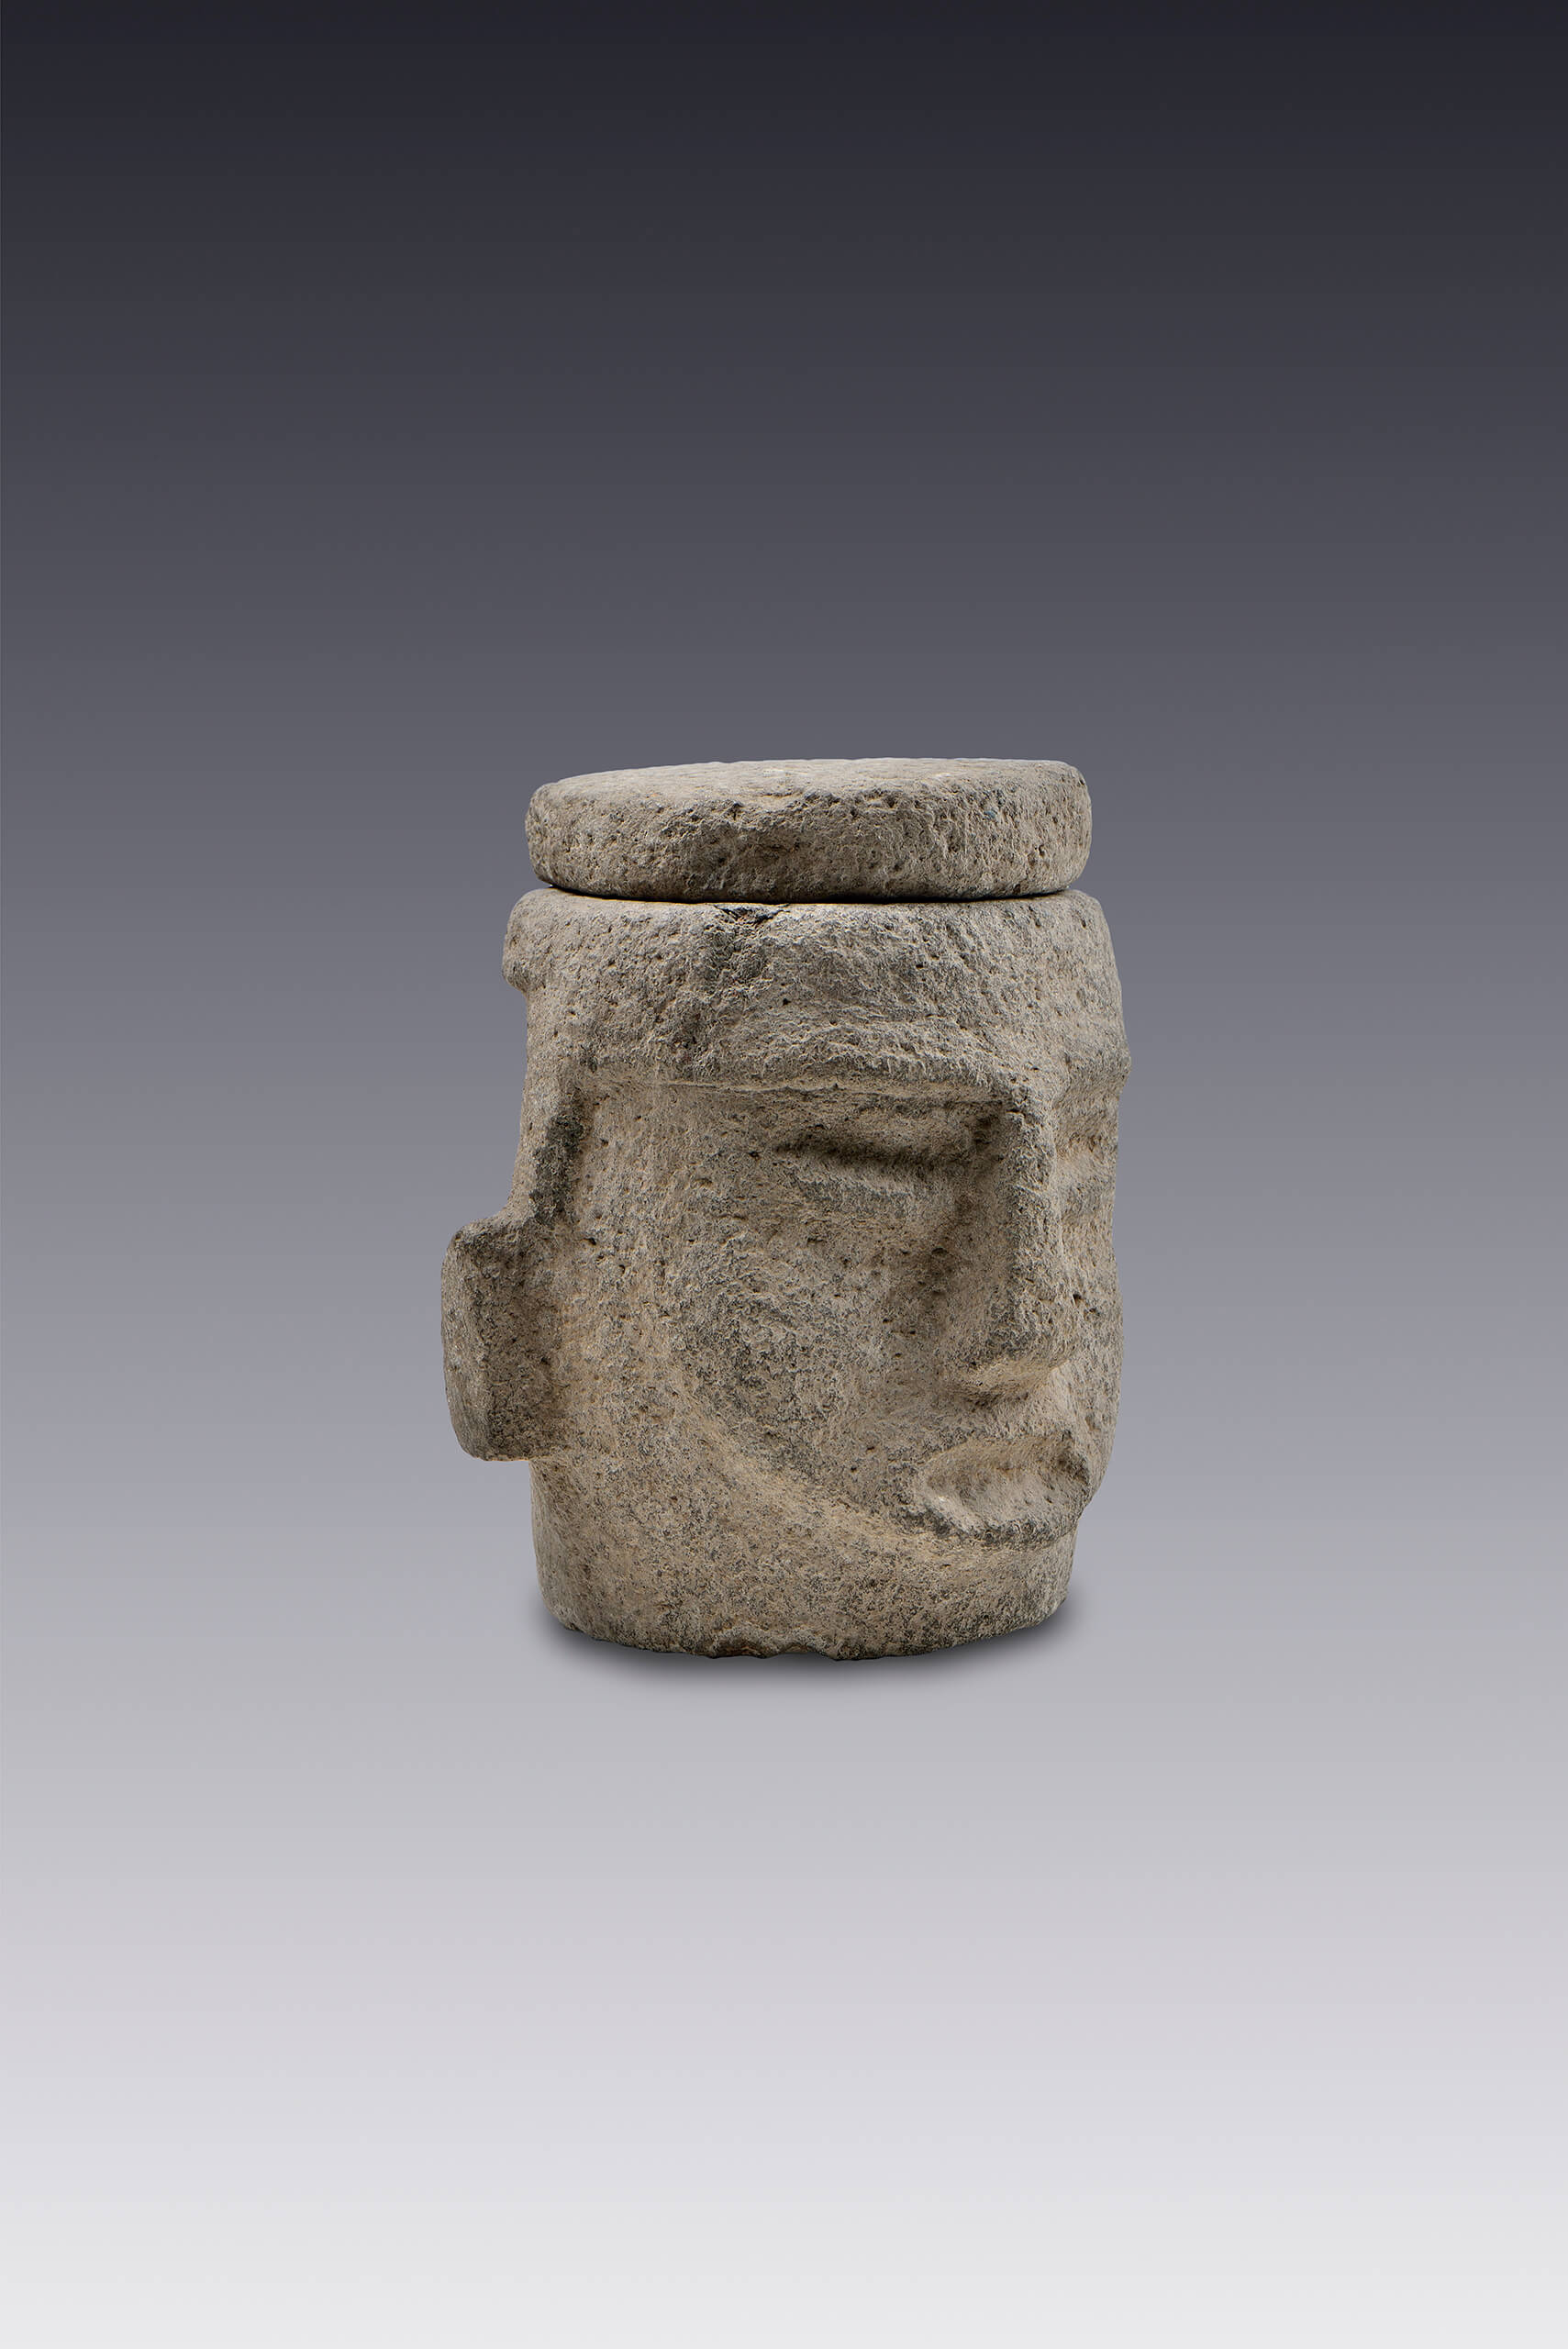 Recipiente con forma de cabeza humana | El México antiguo. Salas de Arte Prehispánico | Museo Amparo, Puebla